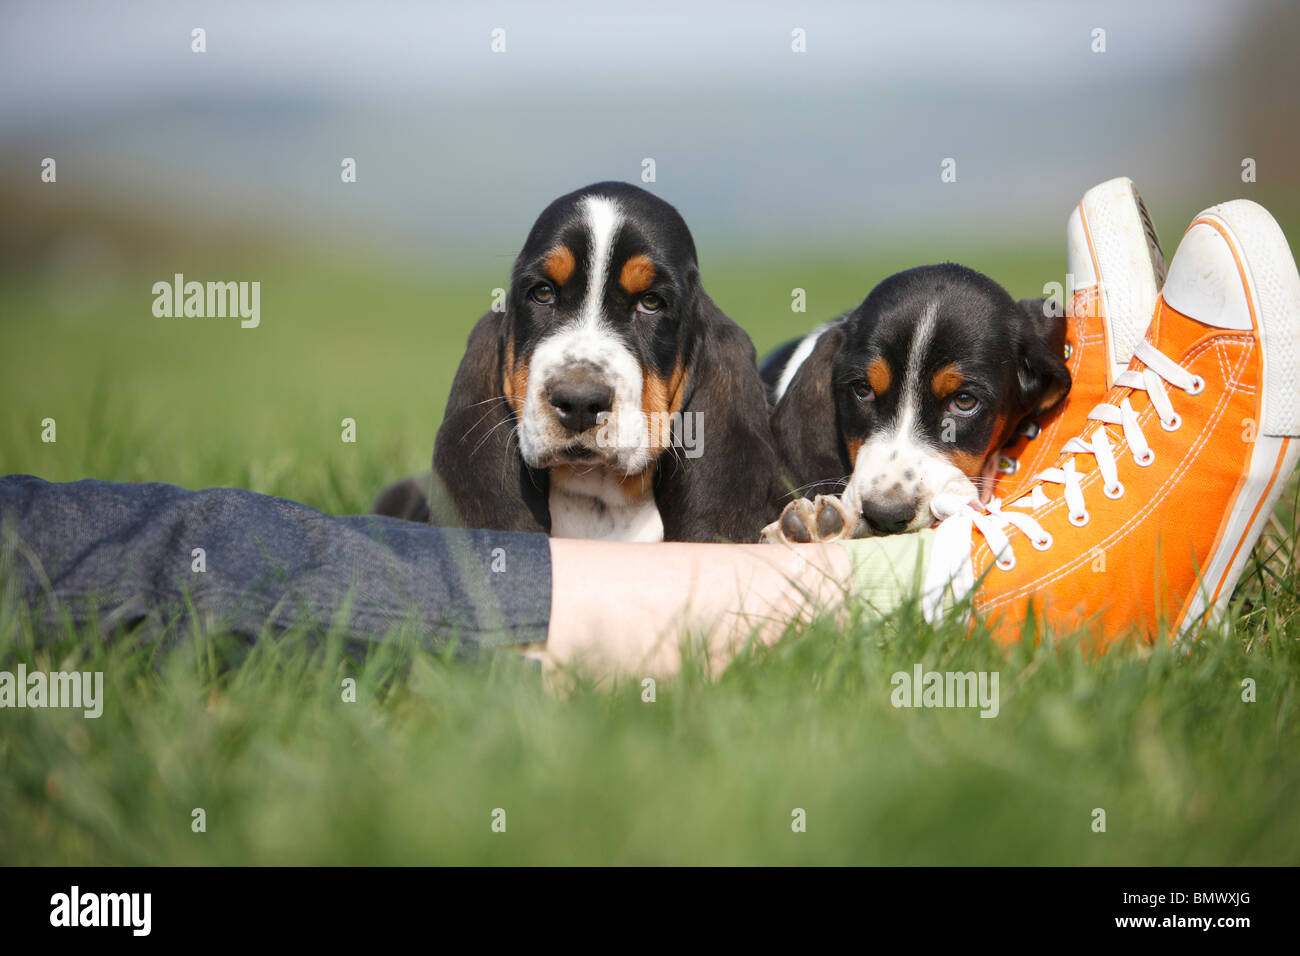 Basset Hound (Canis lupus f. familiaris), deux chiots 8 semaines couchée dans un pré au pied d'une personne qui porte de sport orange Banque D'Images